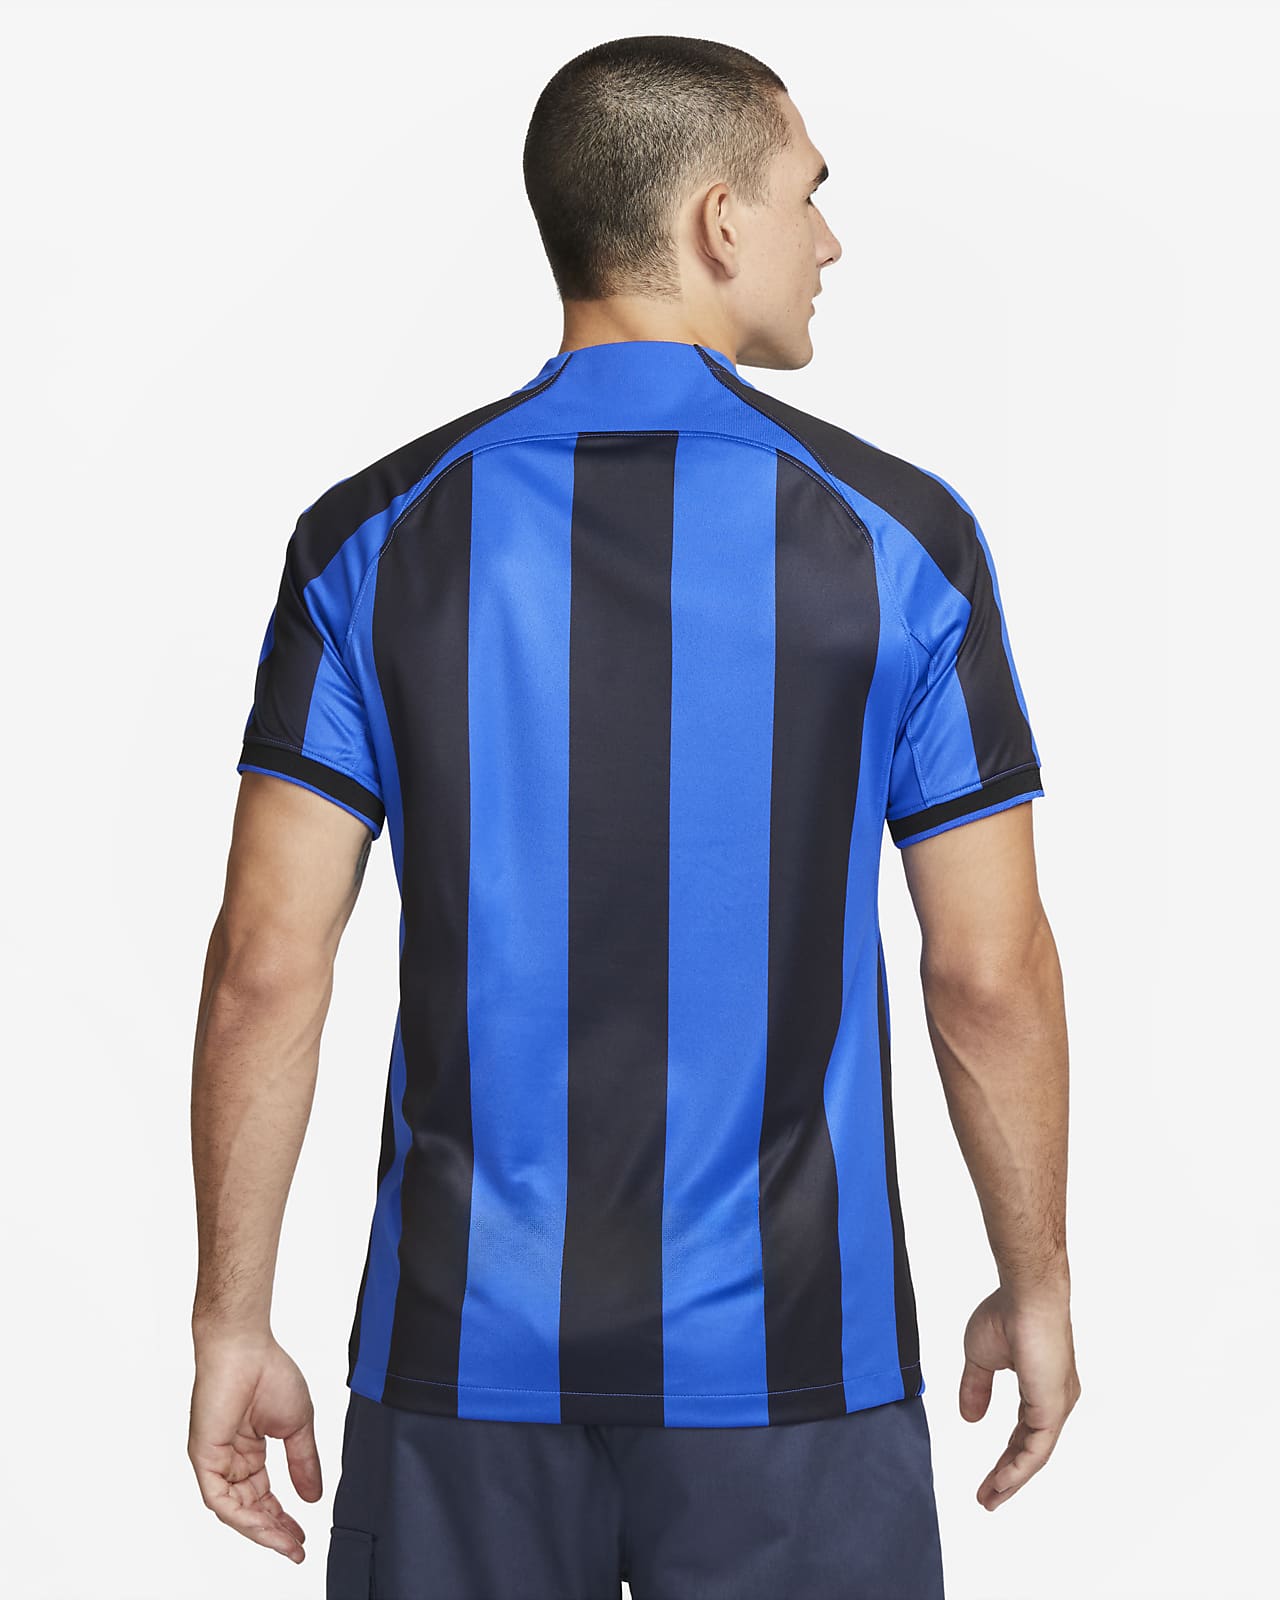 Inter Milan 2022/23 Stadium Home Men's Nike Dri-FIT Football Shirt